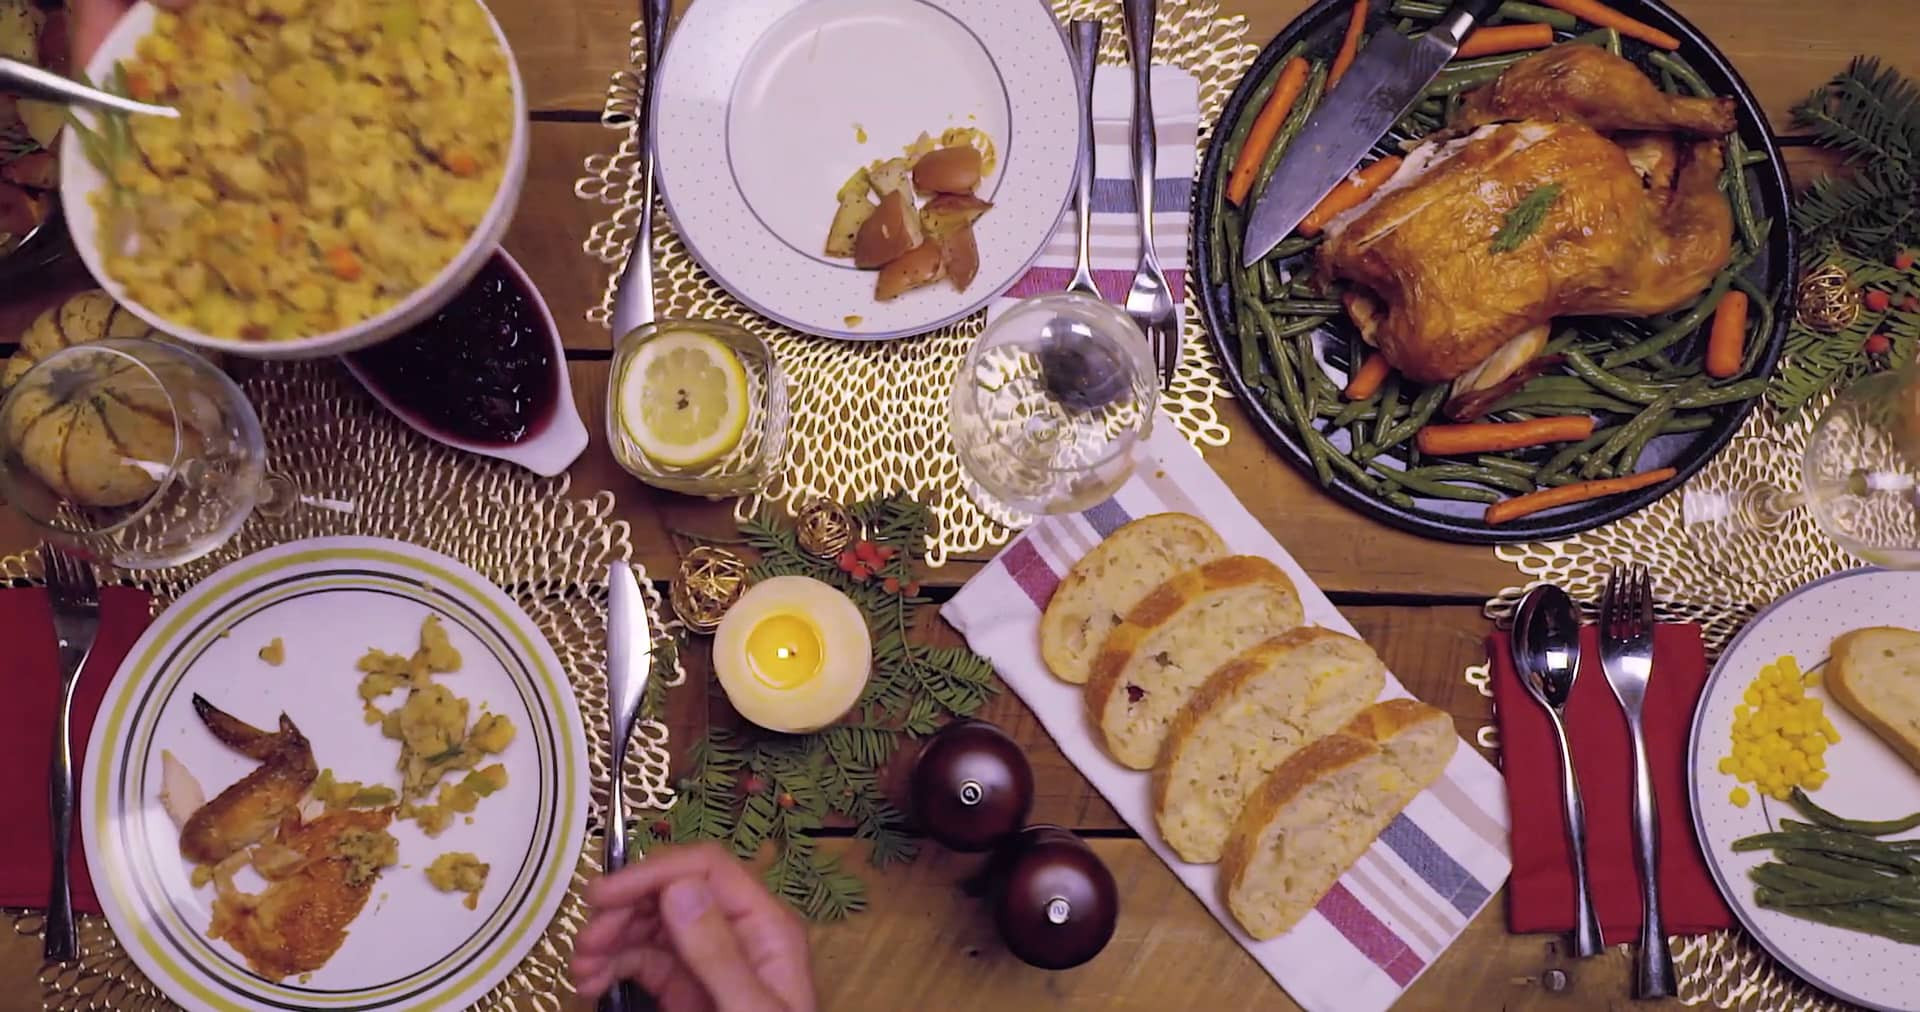 Wegmans Thanksgiving Dinner 2019
 Buick Thanksgiving Dinner on Vimeo